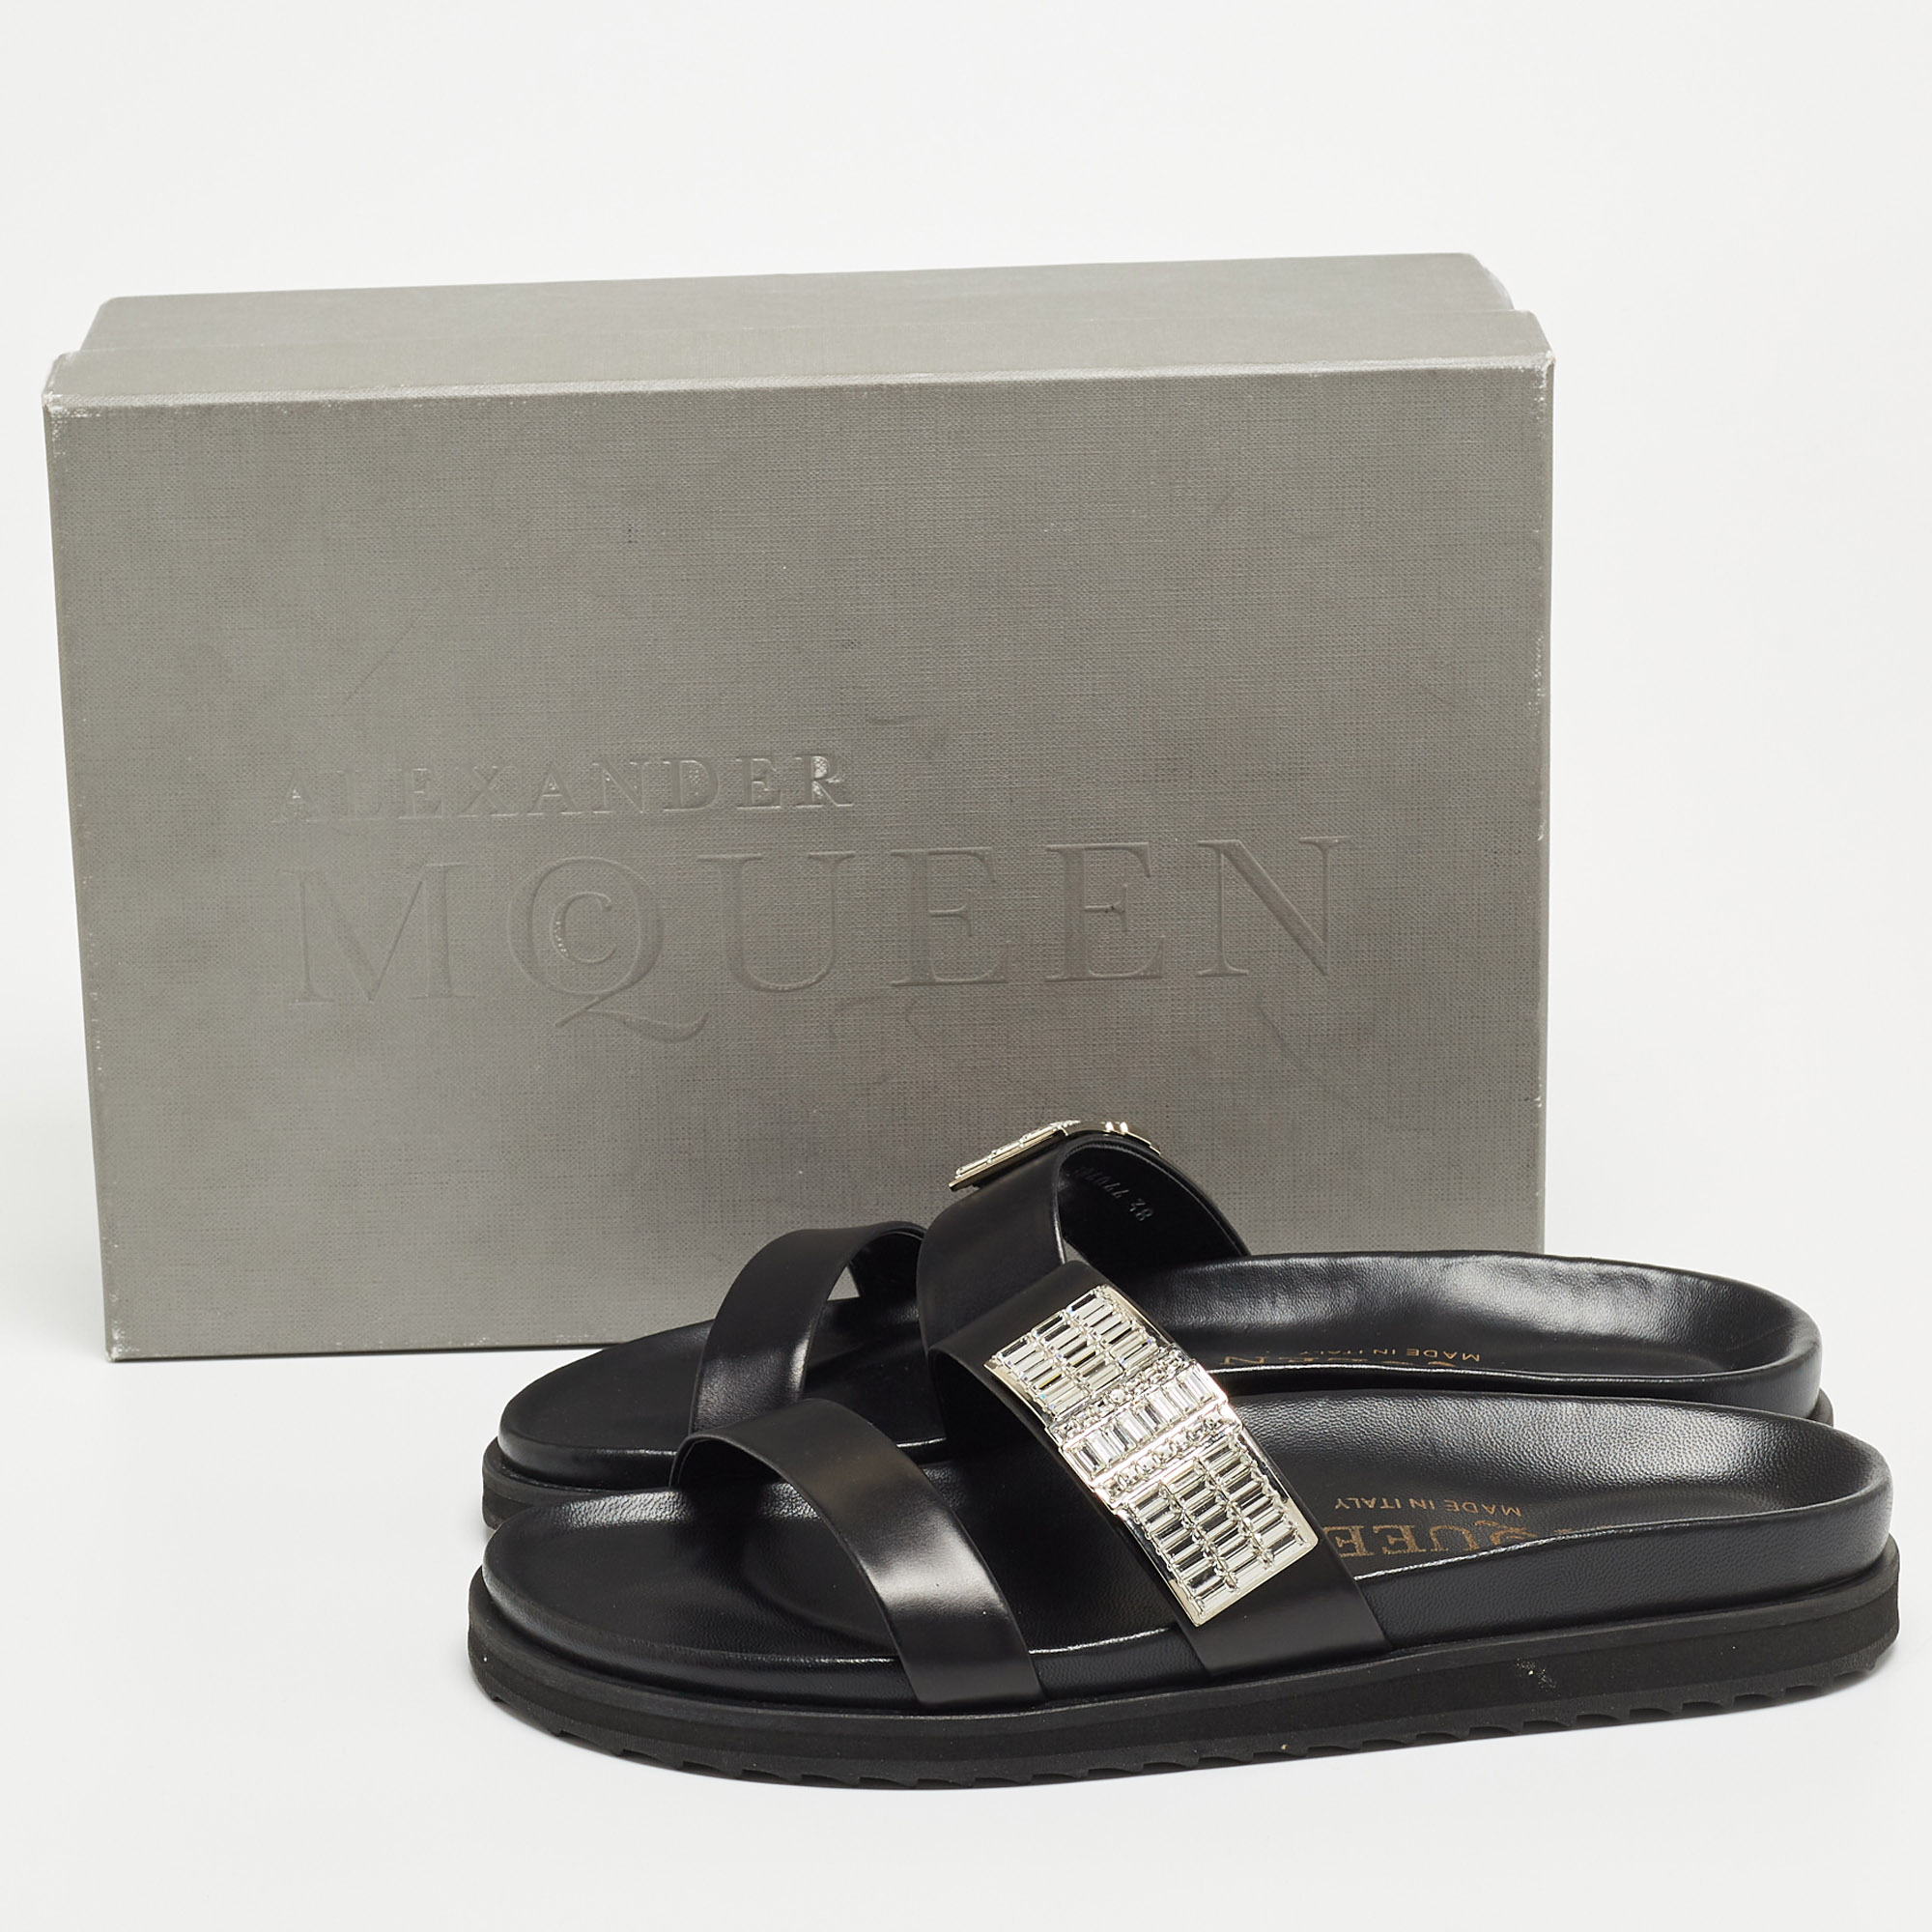 Alexander McQueen Black Leather Crystals Embellished Slide Flats Size 38